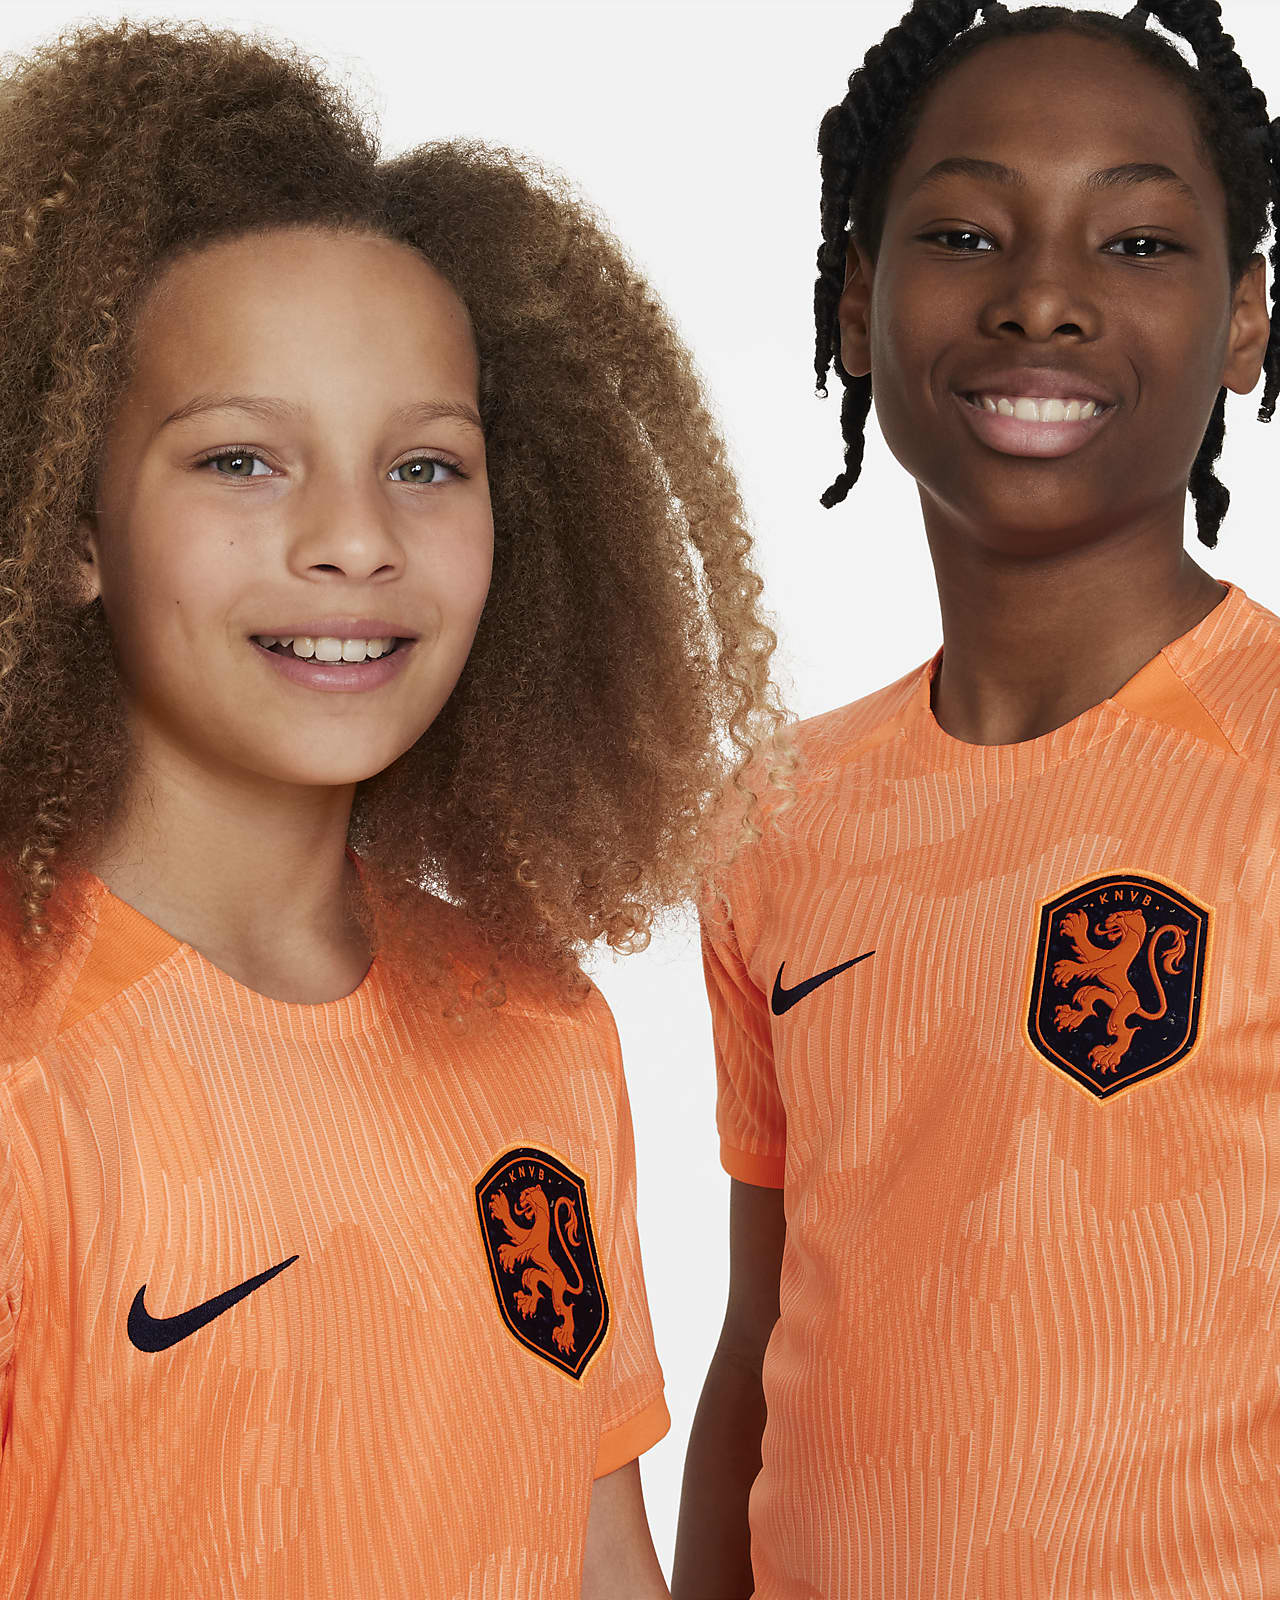 KNVB Football Lionesses Orange 